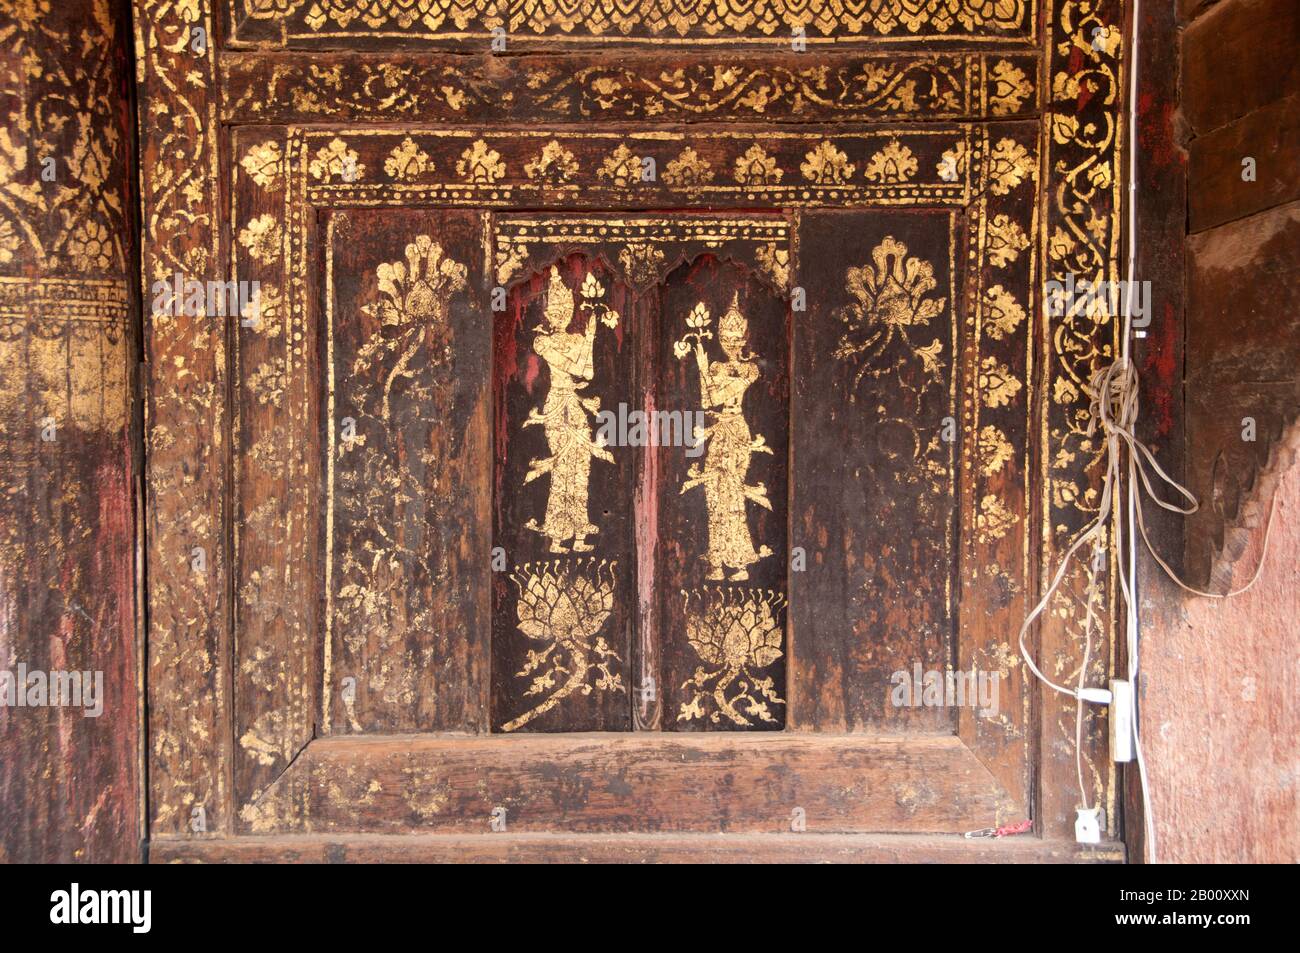 Thailandia: Decorazione lacca, Wat Phra che Lampang Luang, Thailandia settentrionale. Wat Phra That Lampang Luang (วัดพระธาตุลำปางหลวง), il ‘Tempio della Reliquia del Grande Buddha di Lampang’, risale al XV secolo ed è un tempio ligneo in stile Lanna trovato nel distretto di Ko Kha nella provincia di Lampang. Si trova in cima a un tumulo artificiale ed è circondato da un alto e massiccio muro di mattoni. Il tempio stesso raddoppia come un wiang (insediamento fortificato), ed è stato costruito come un tempio fortificato. Foto Stock